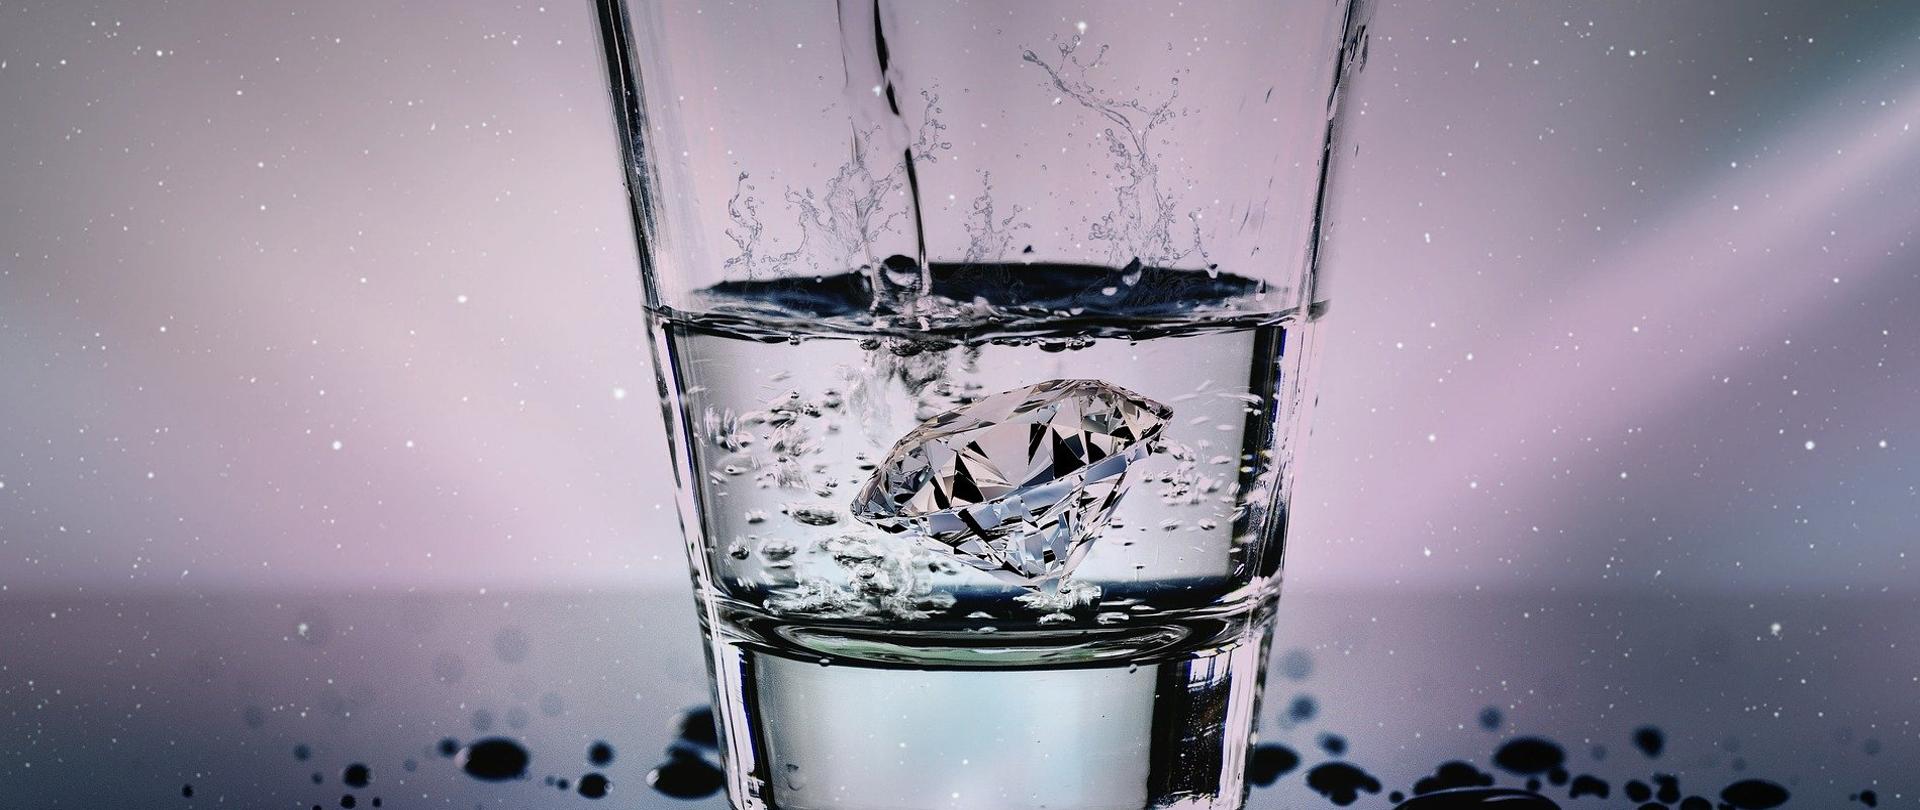 Na zdjęciu znajduje się szklanka z wodą, do której do środka wrzucony został diament. Do szklanki z góry dolewana jest woda. Wokół szklanki na szklanym blacie są krople rozlanej wody.